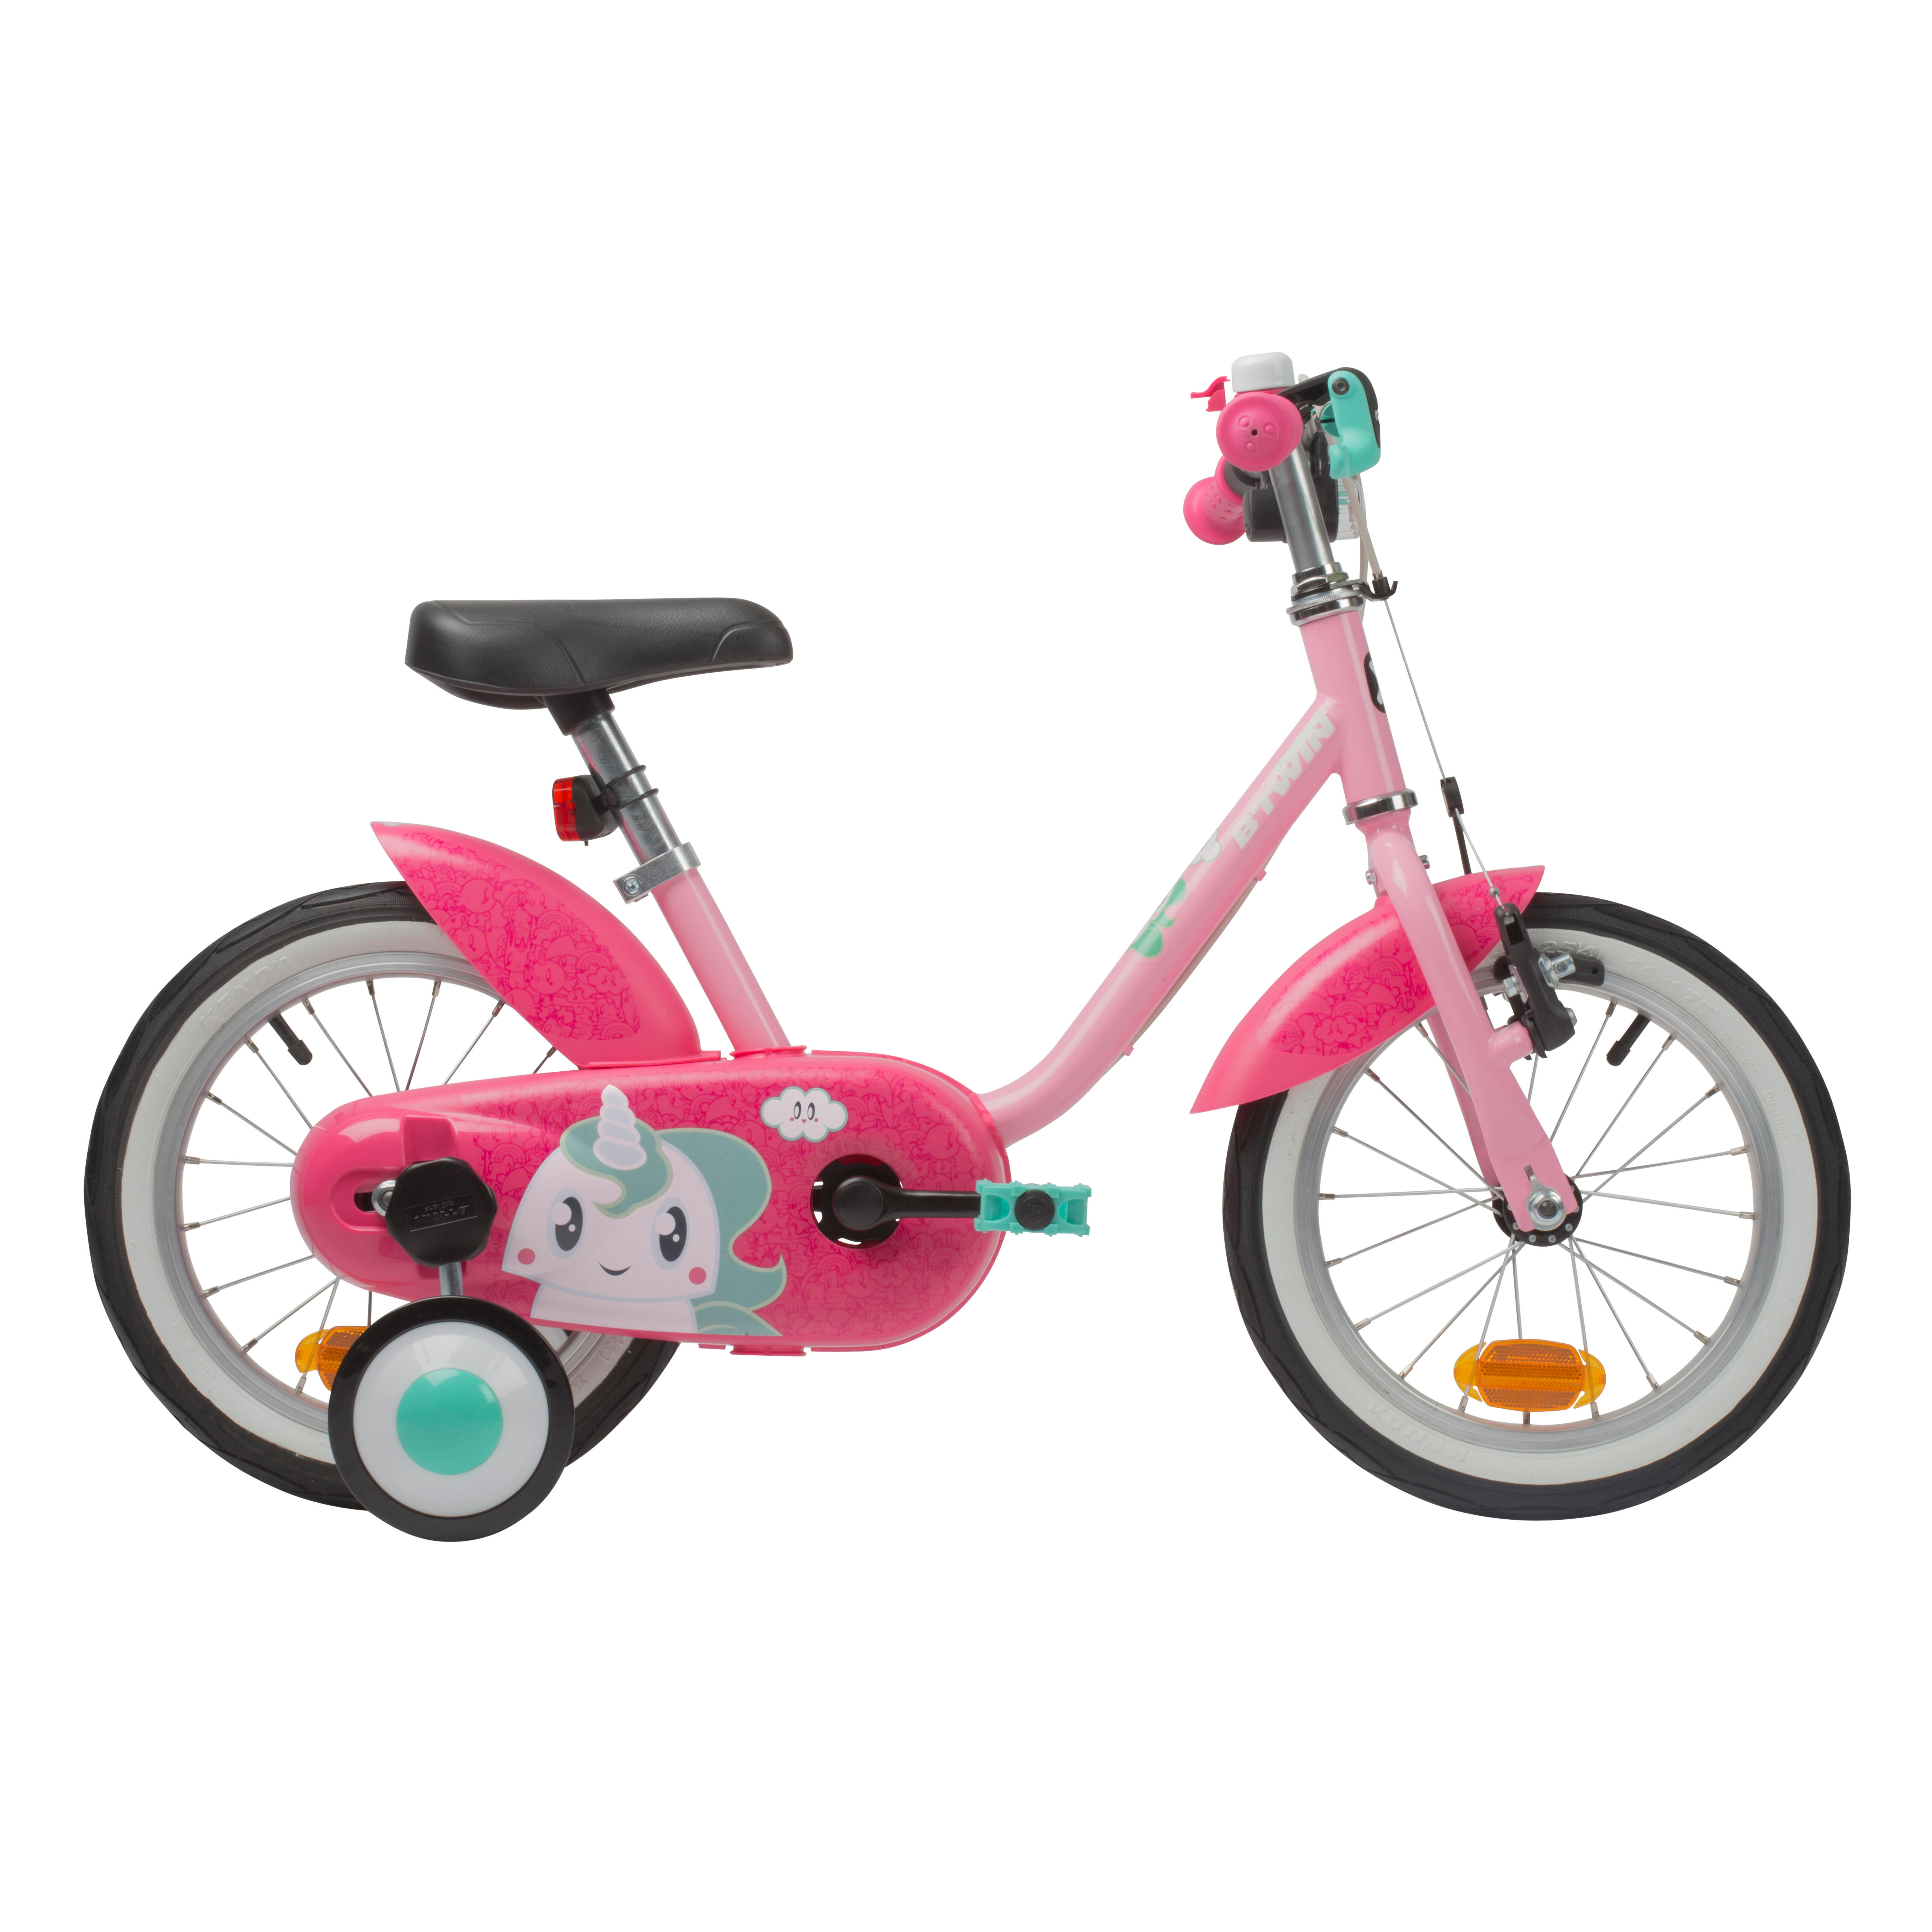 Kinderfahrrad Unisex Junge Mädchen Fahrrad Bike mit Stützräder 14 Zoll BRANDNEU 